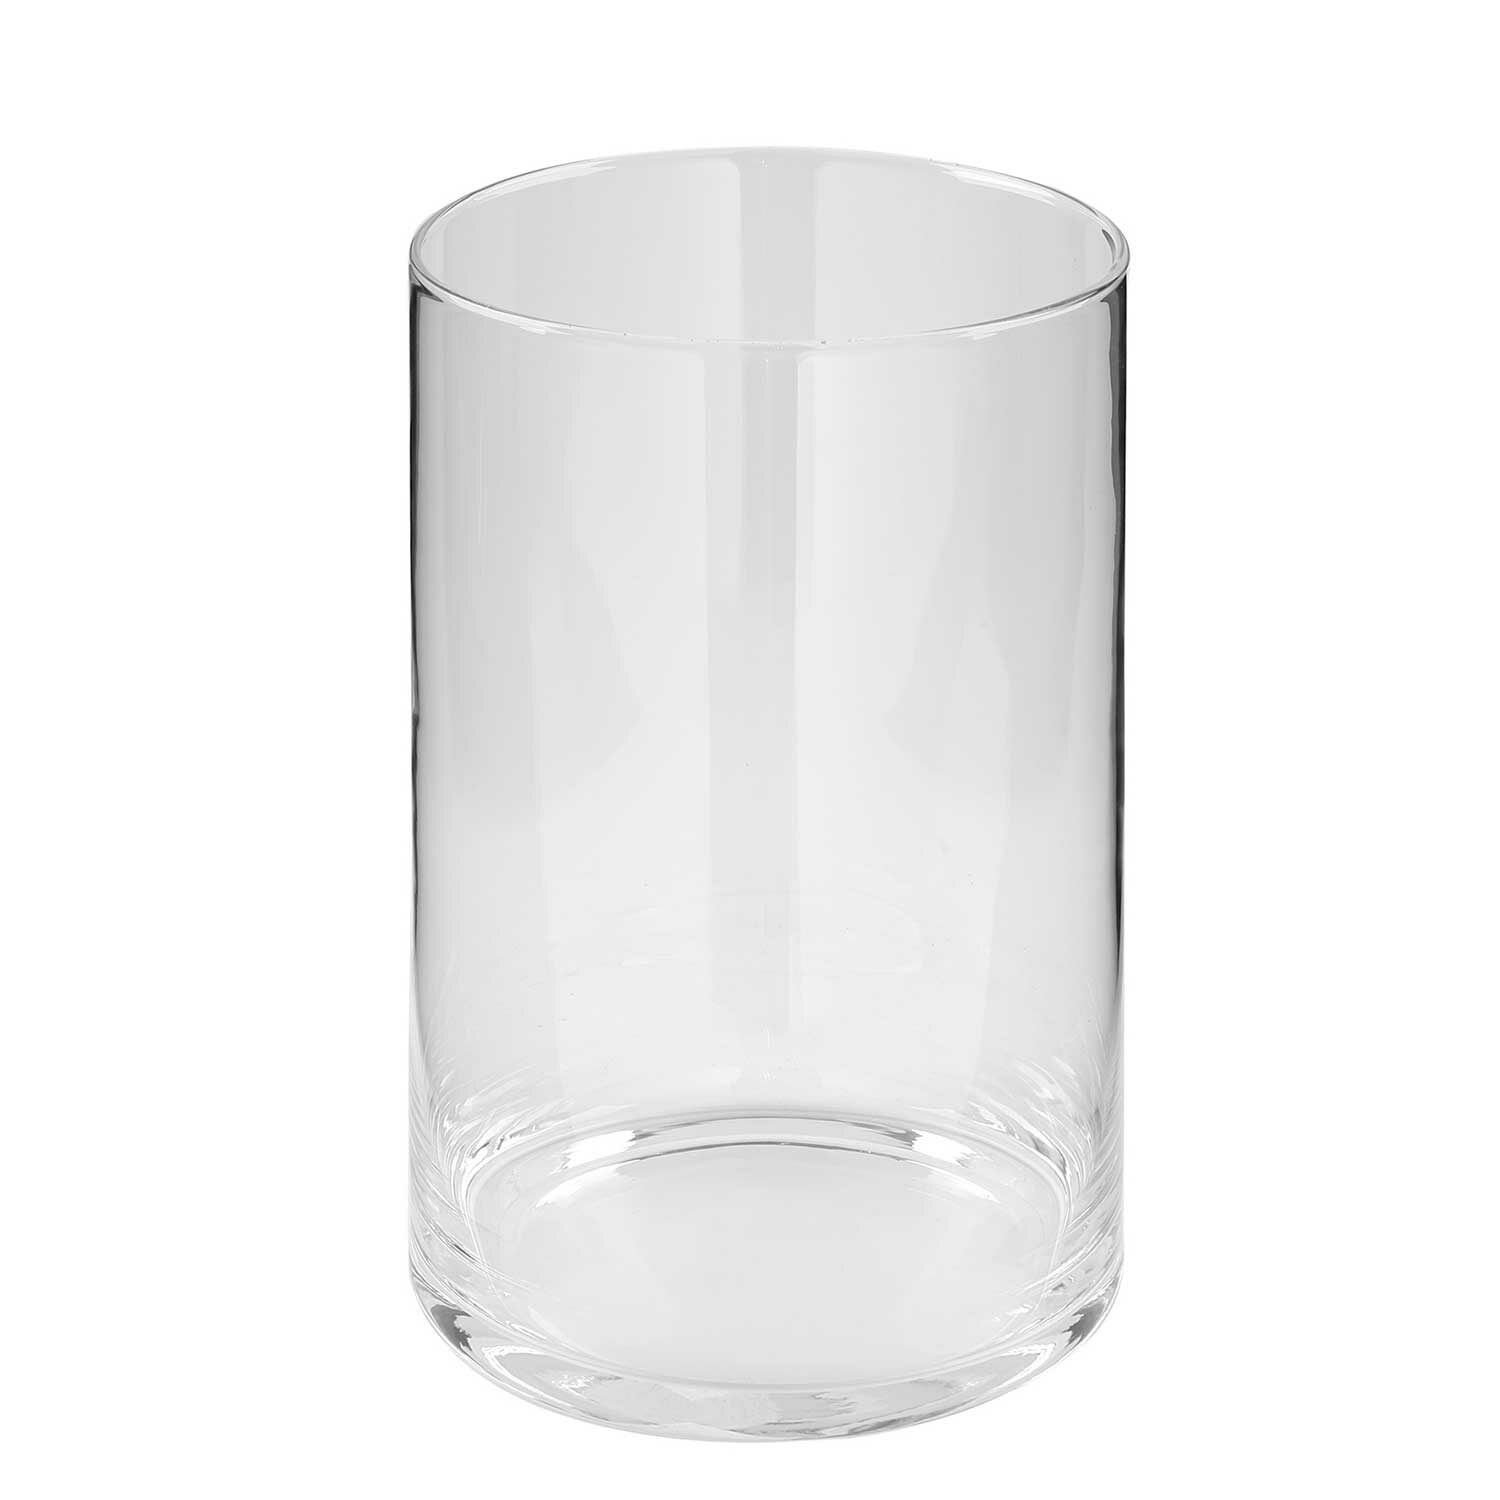 GORDEN Glaszylinder mit Boden